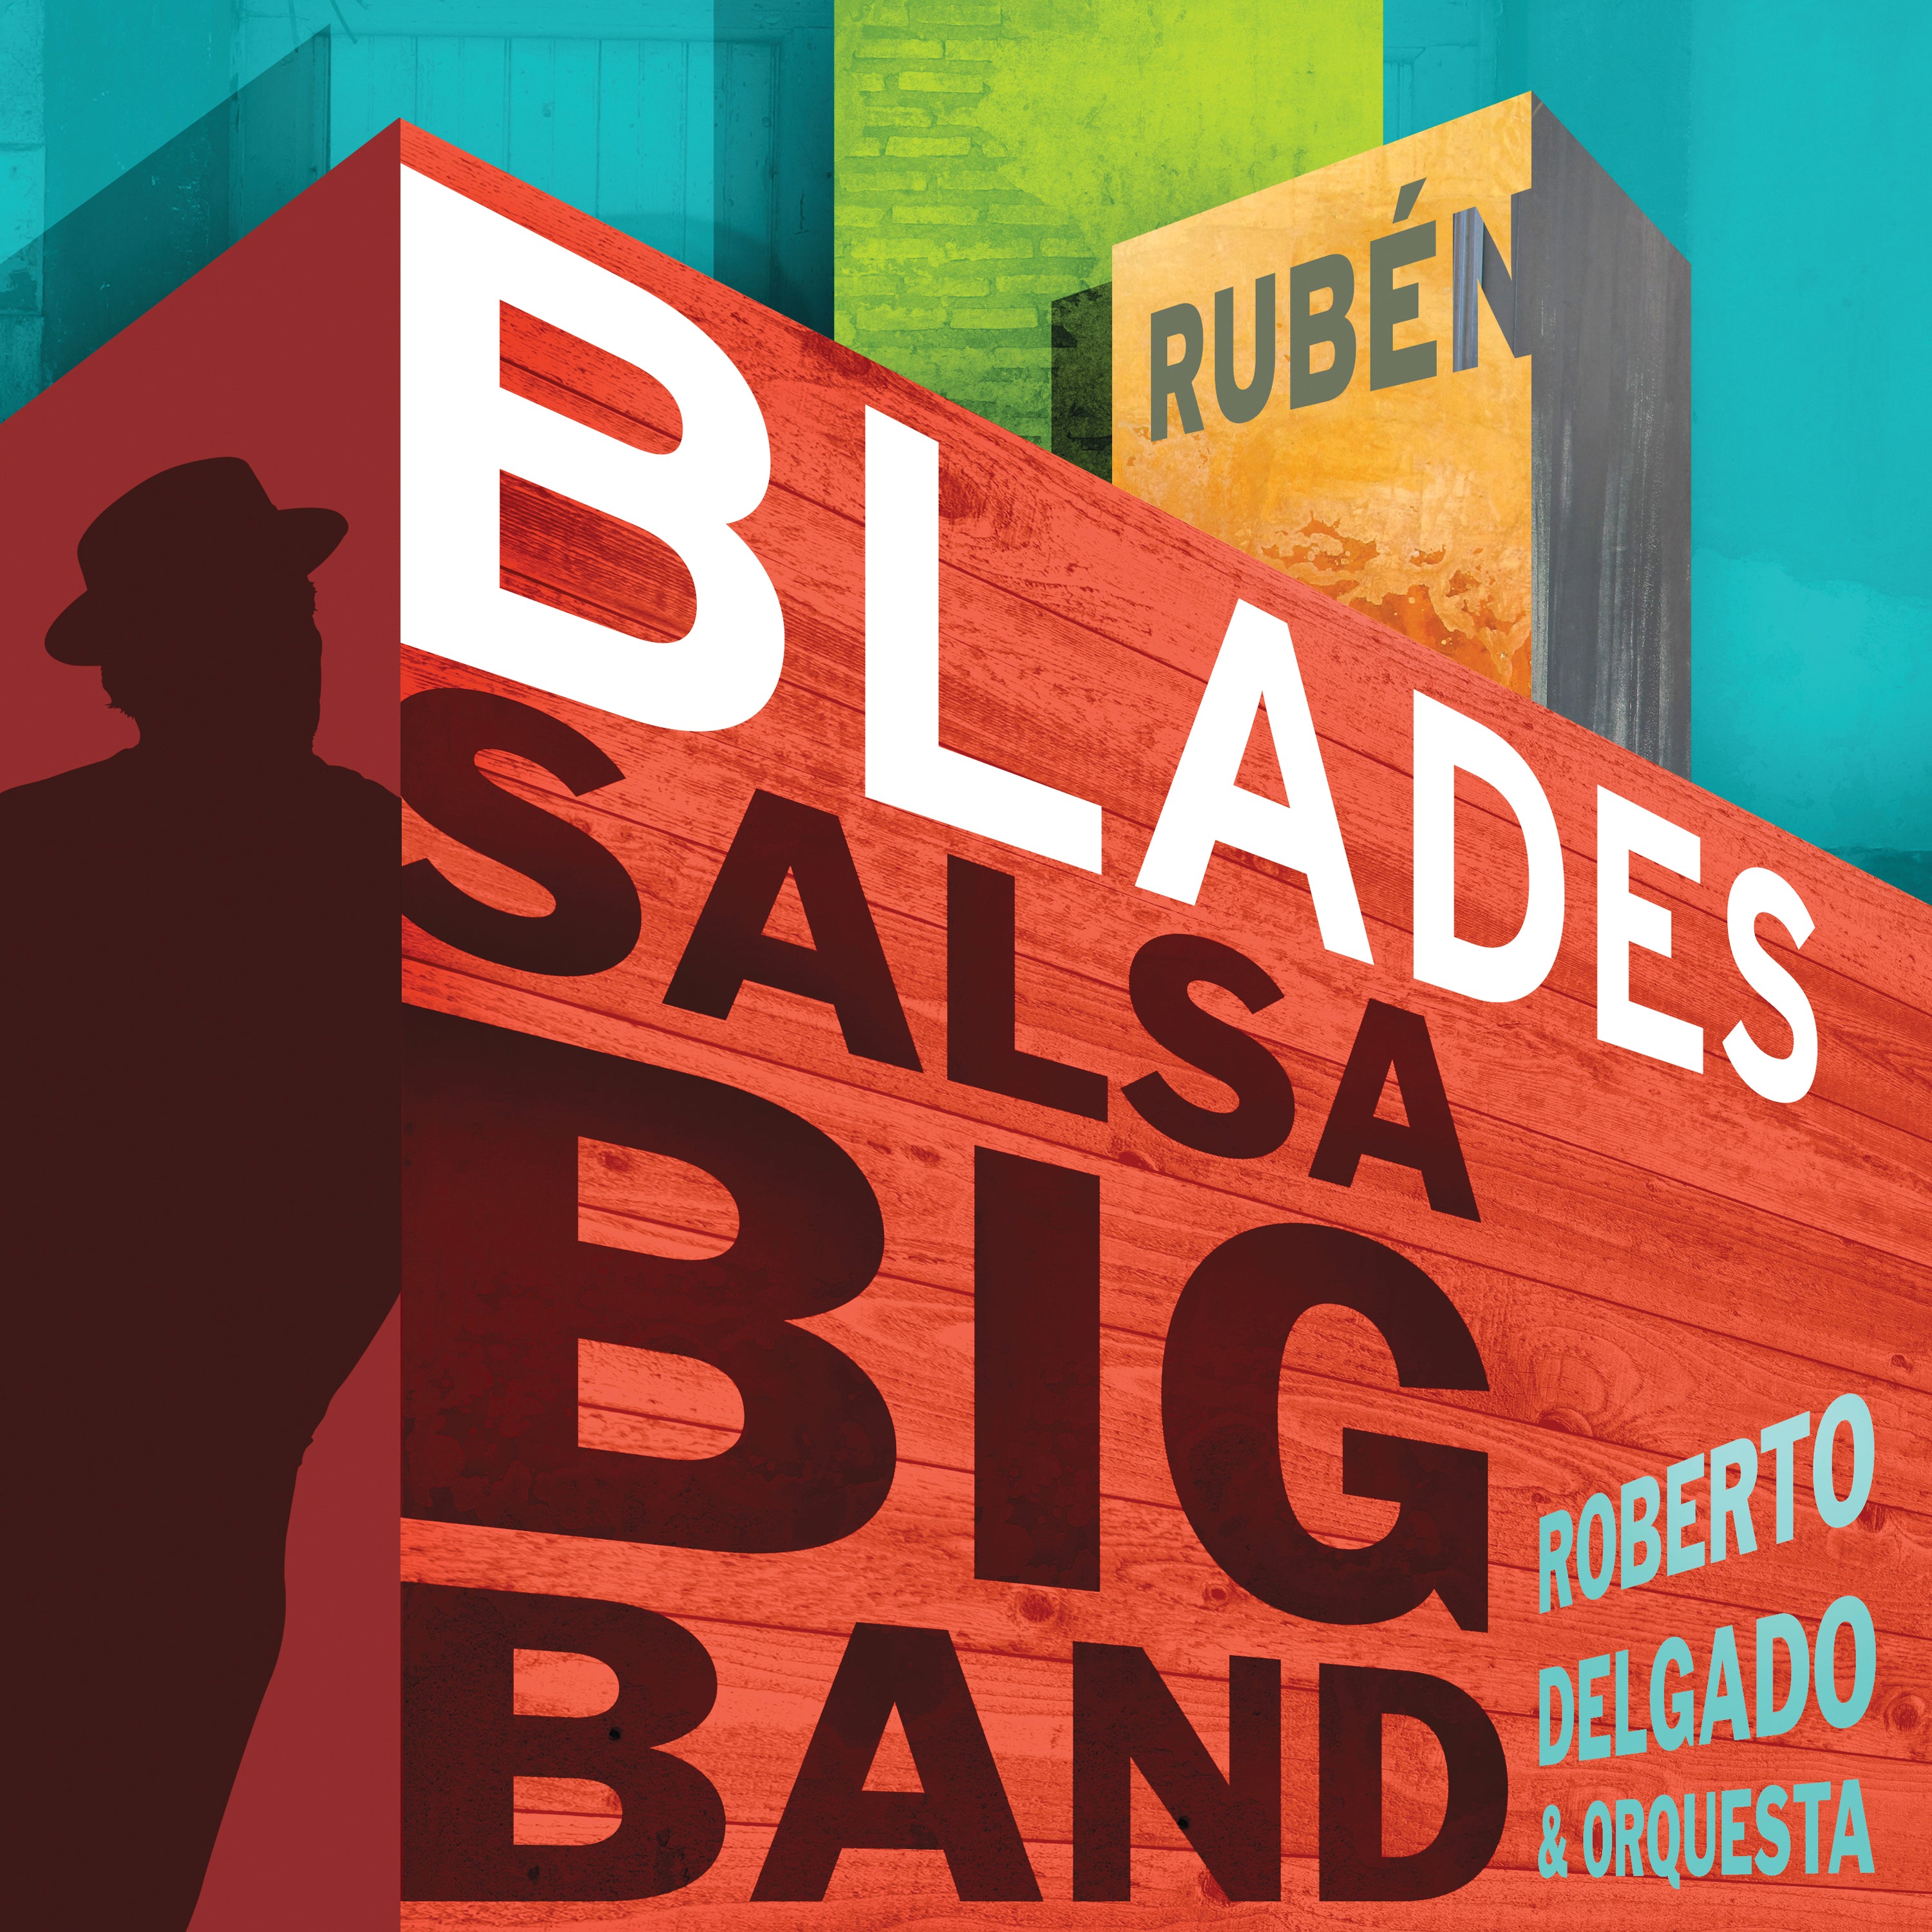 Rubén Blades with Roberto Delgado & Orquesta - "Salsa Big Band" | CD or Autographed CD or Digital Download